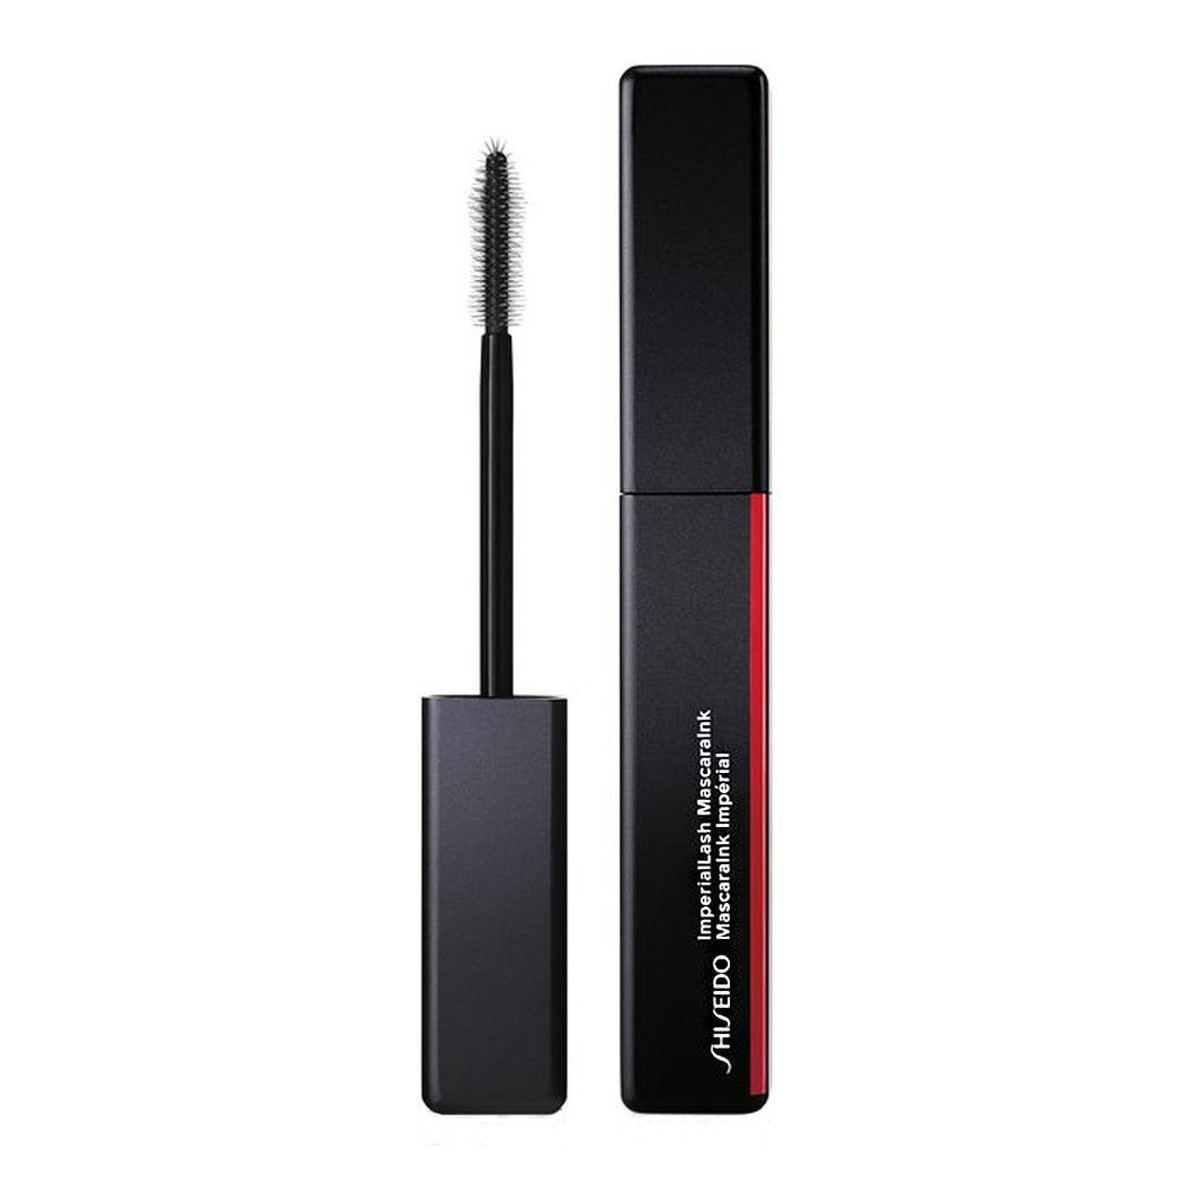 Shiseido Imperiallash mascaraink wydłużający tusz do rzęs 01 sumi black 8,5 g